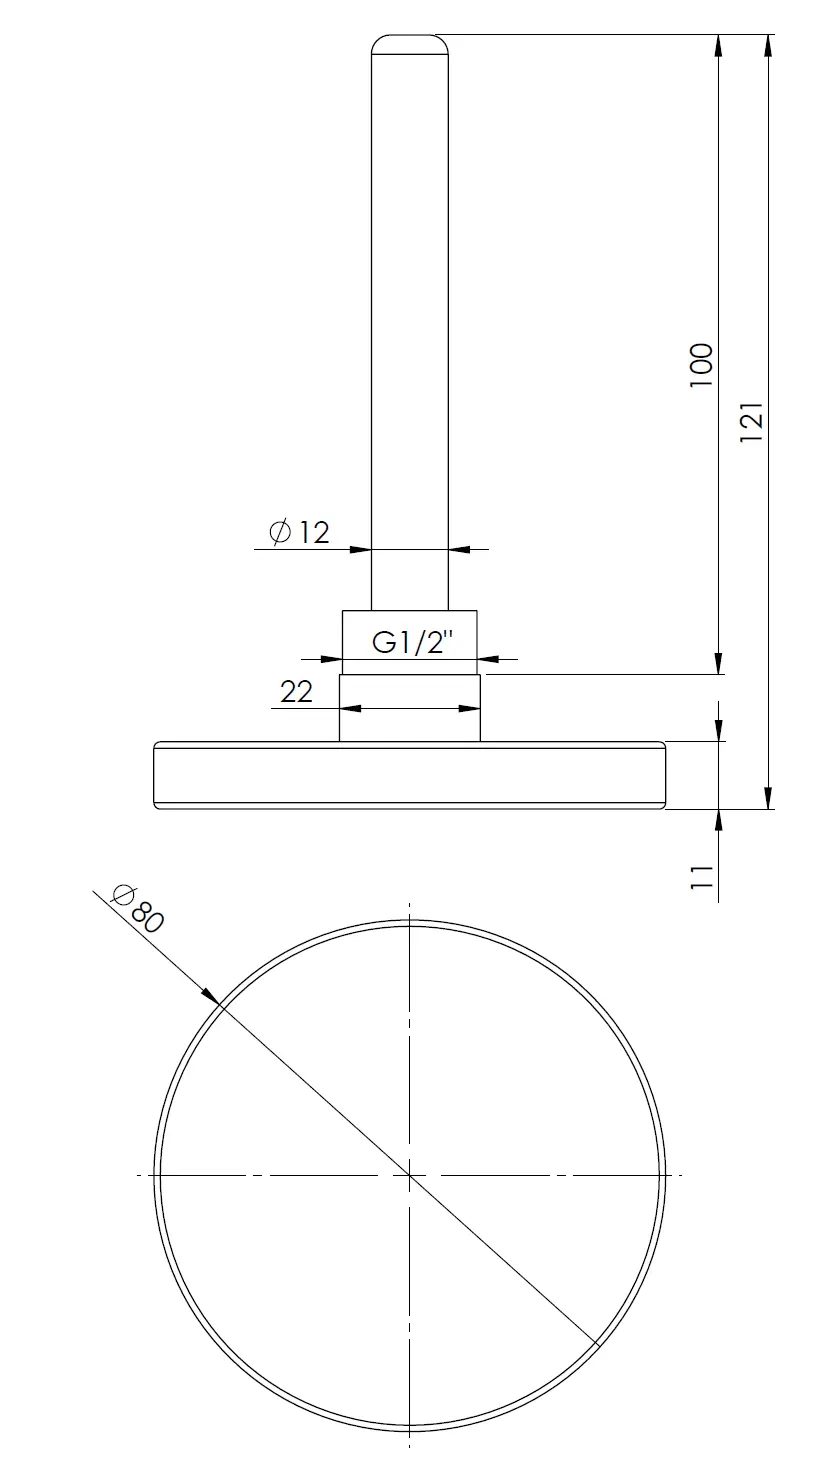 Termometr bimetaliczny BiTh 80, fi80 mm, -20÷60°C, L 100 mm, G1/2", ax, kl. 2 - budowa